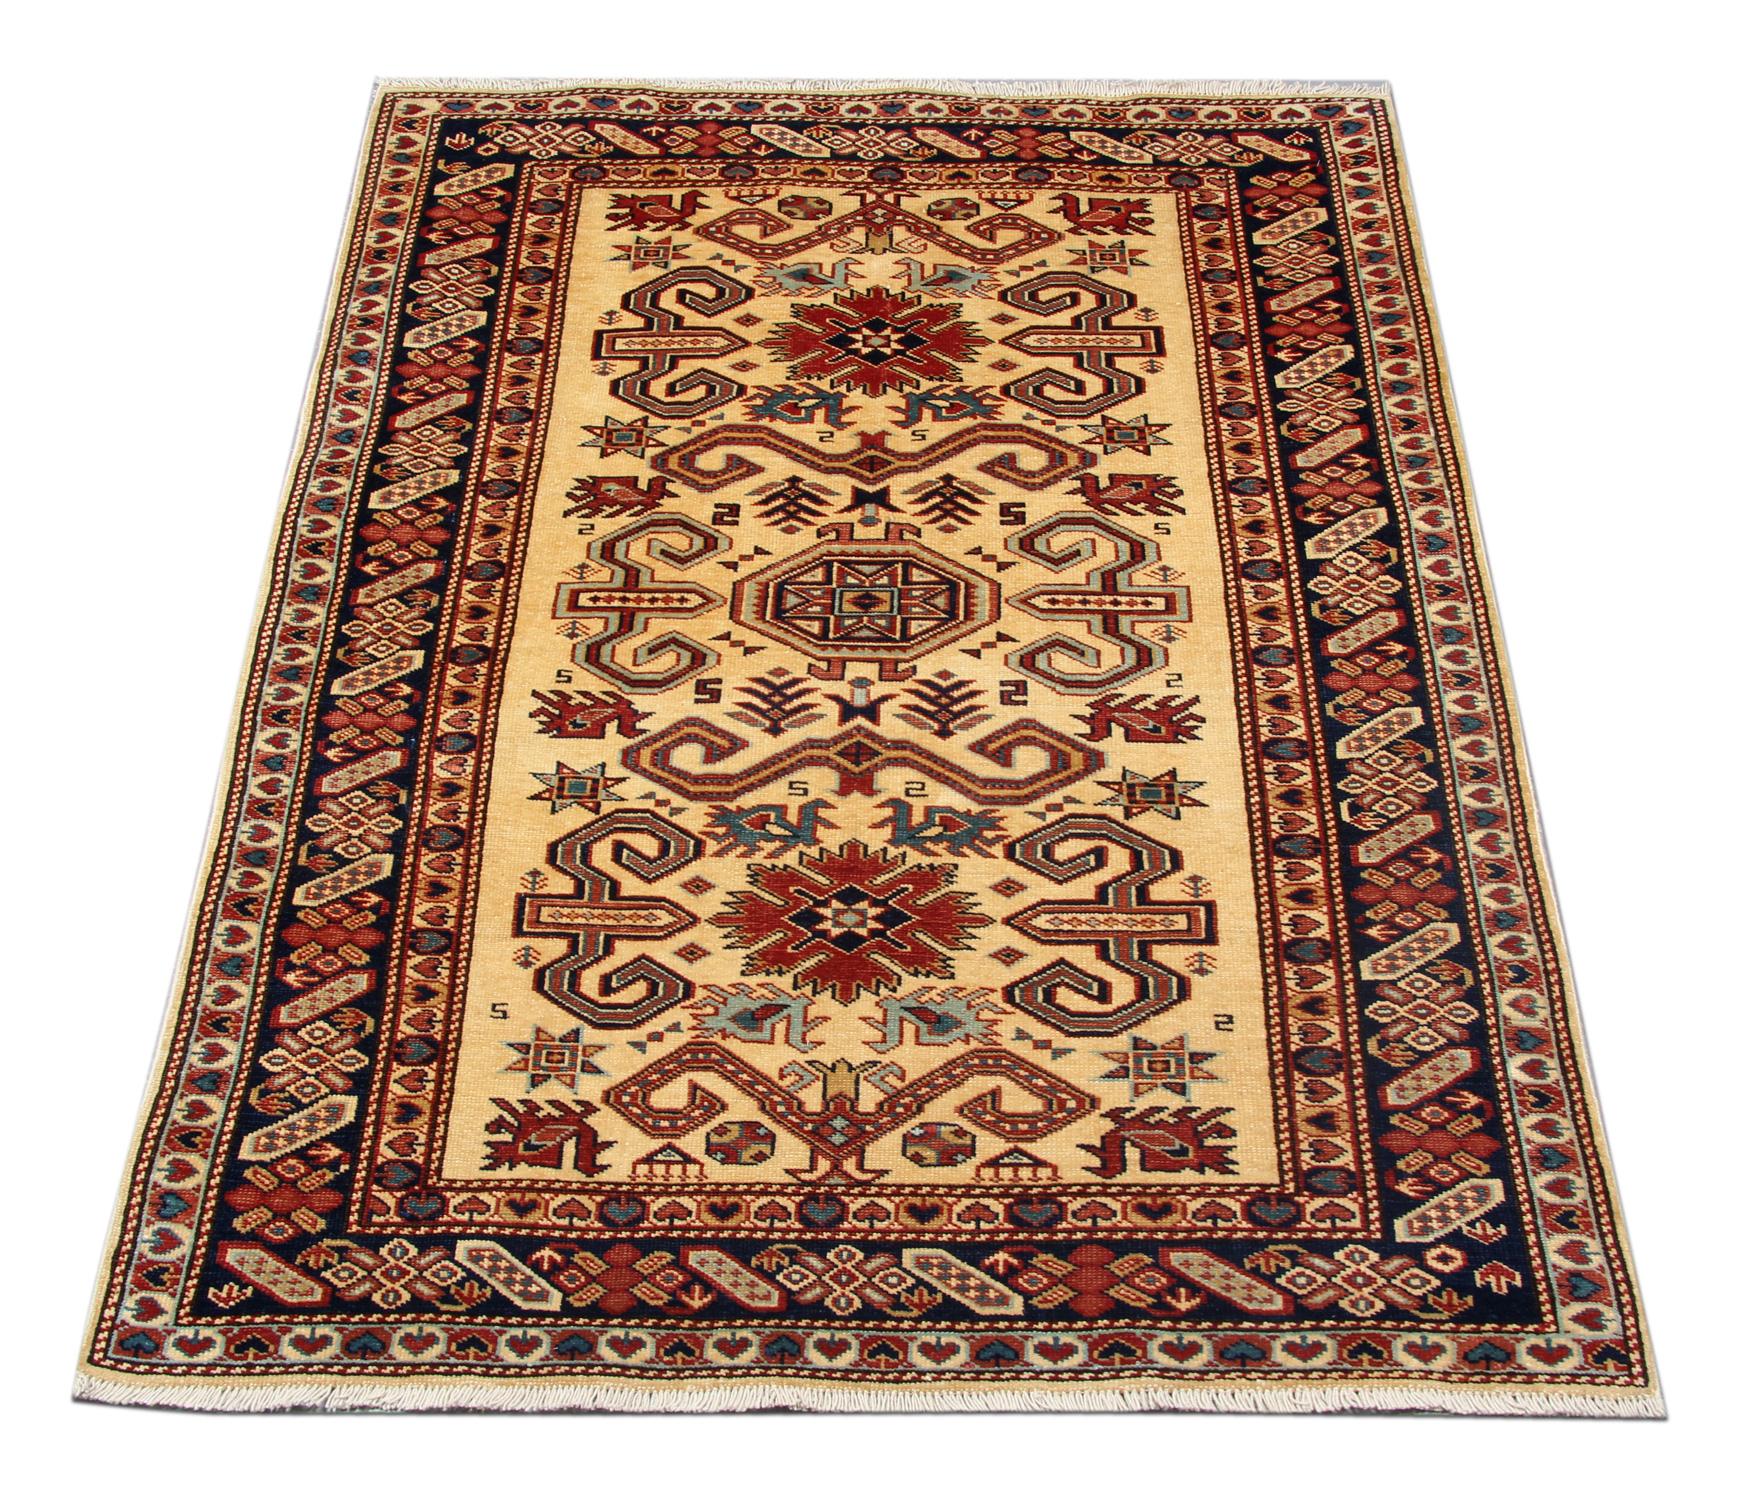 Diese neuen traditionellen handgefertigten Teppiche zeigen Designs aus der kasachischen Region in Kaukasien. Ein konventioneller Stammesteppich ist im Kazak-Gebiet berühmt. Afghanische Weber haben diesen handgewebten Teppich aus hochwertiger